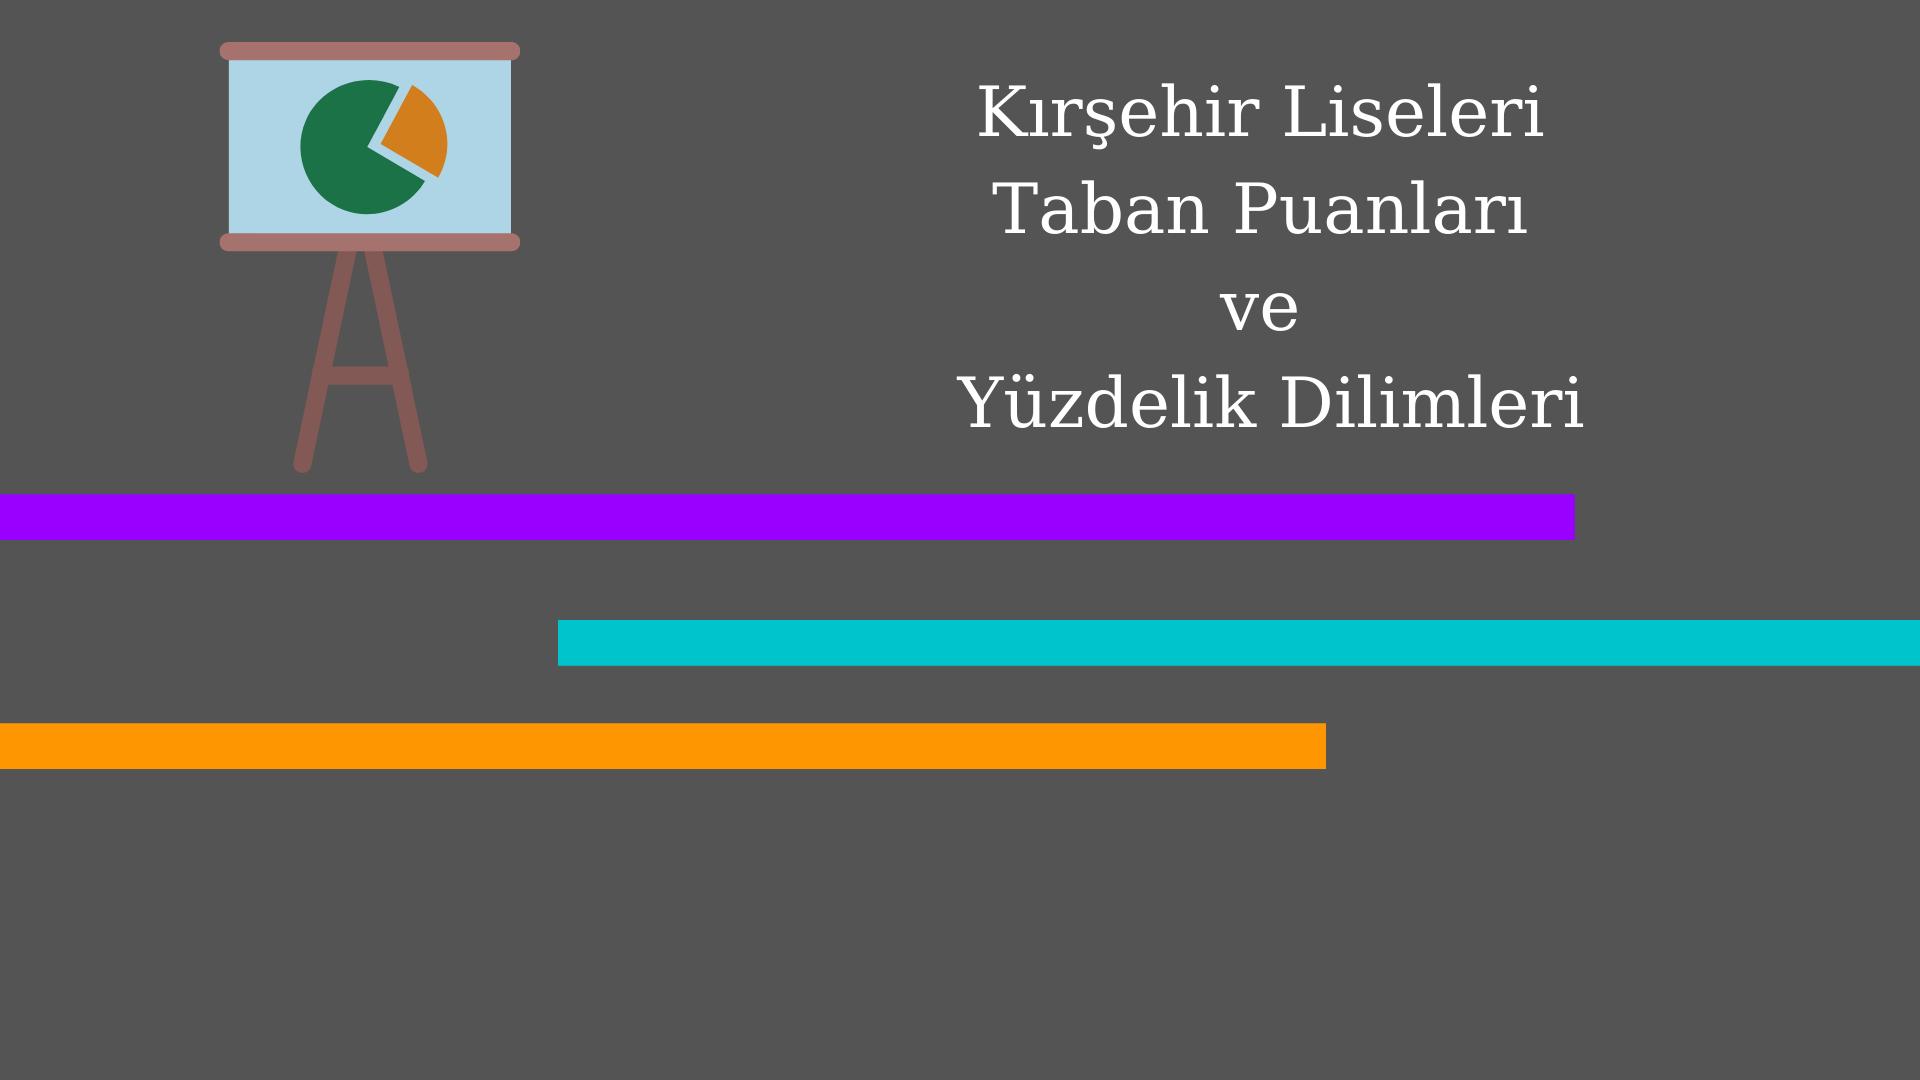 Kırşehir Liseleri Taban Puanları ve Yüzdelik Dilimleri 2021